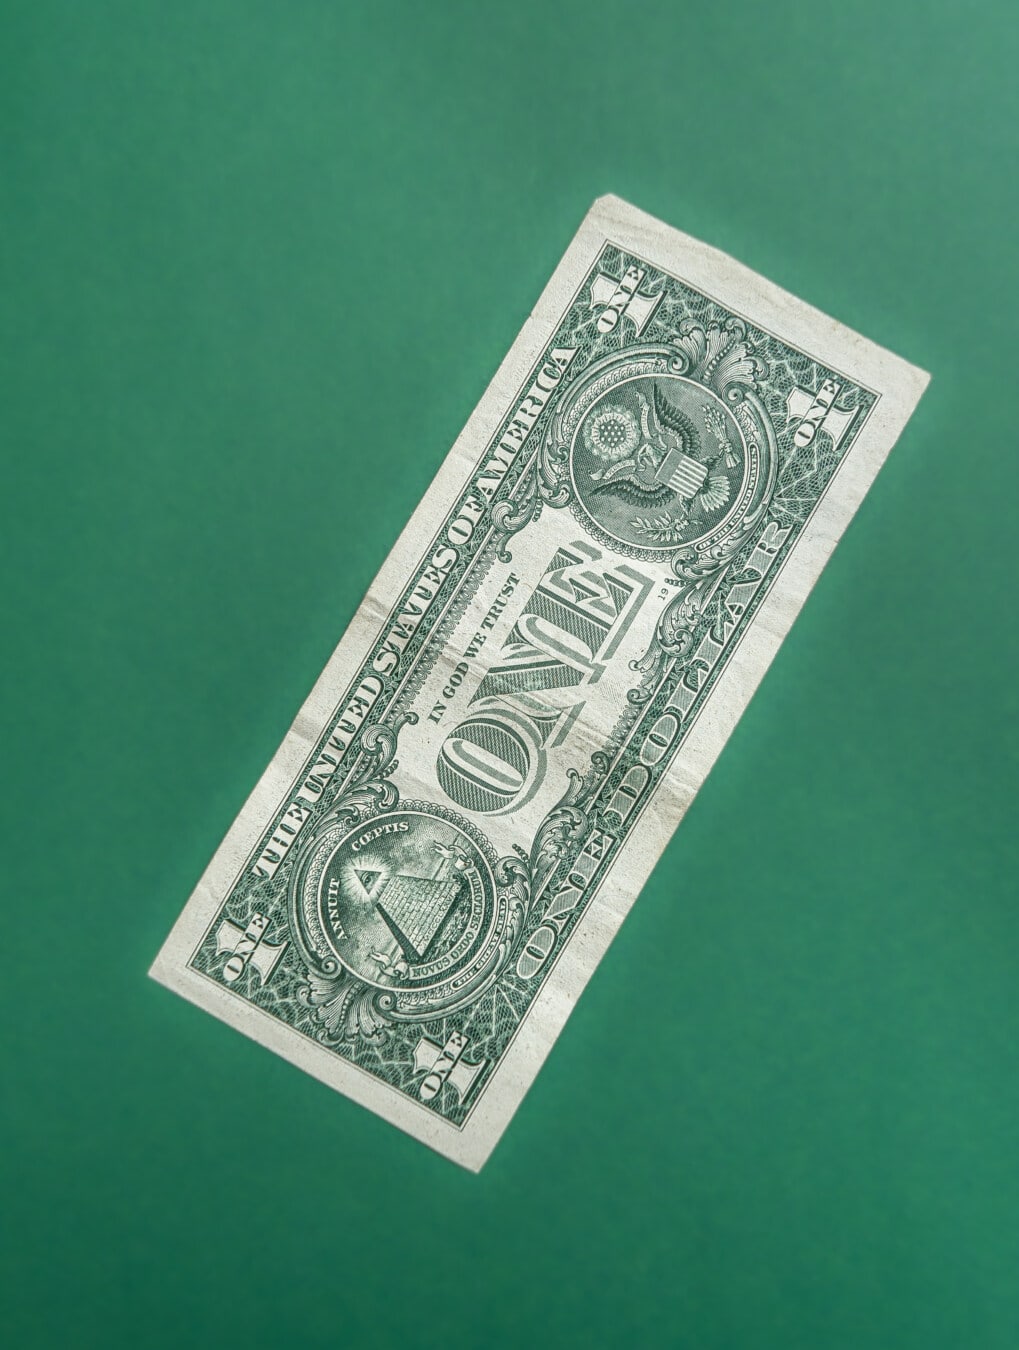 ดอลลาร์, อเมริกา, ใกล้ชิด, ธนบัตร, กระดาษ, สีเขียวเข้ม, เงิน, ทางการเงิน, สกุลเงิน